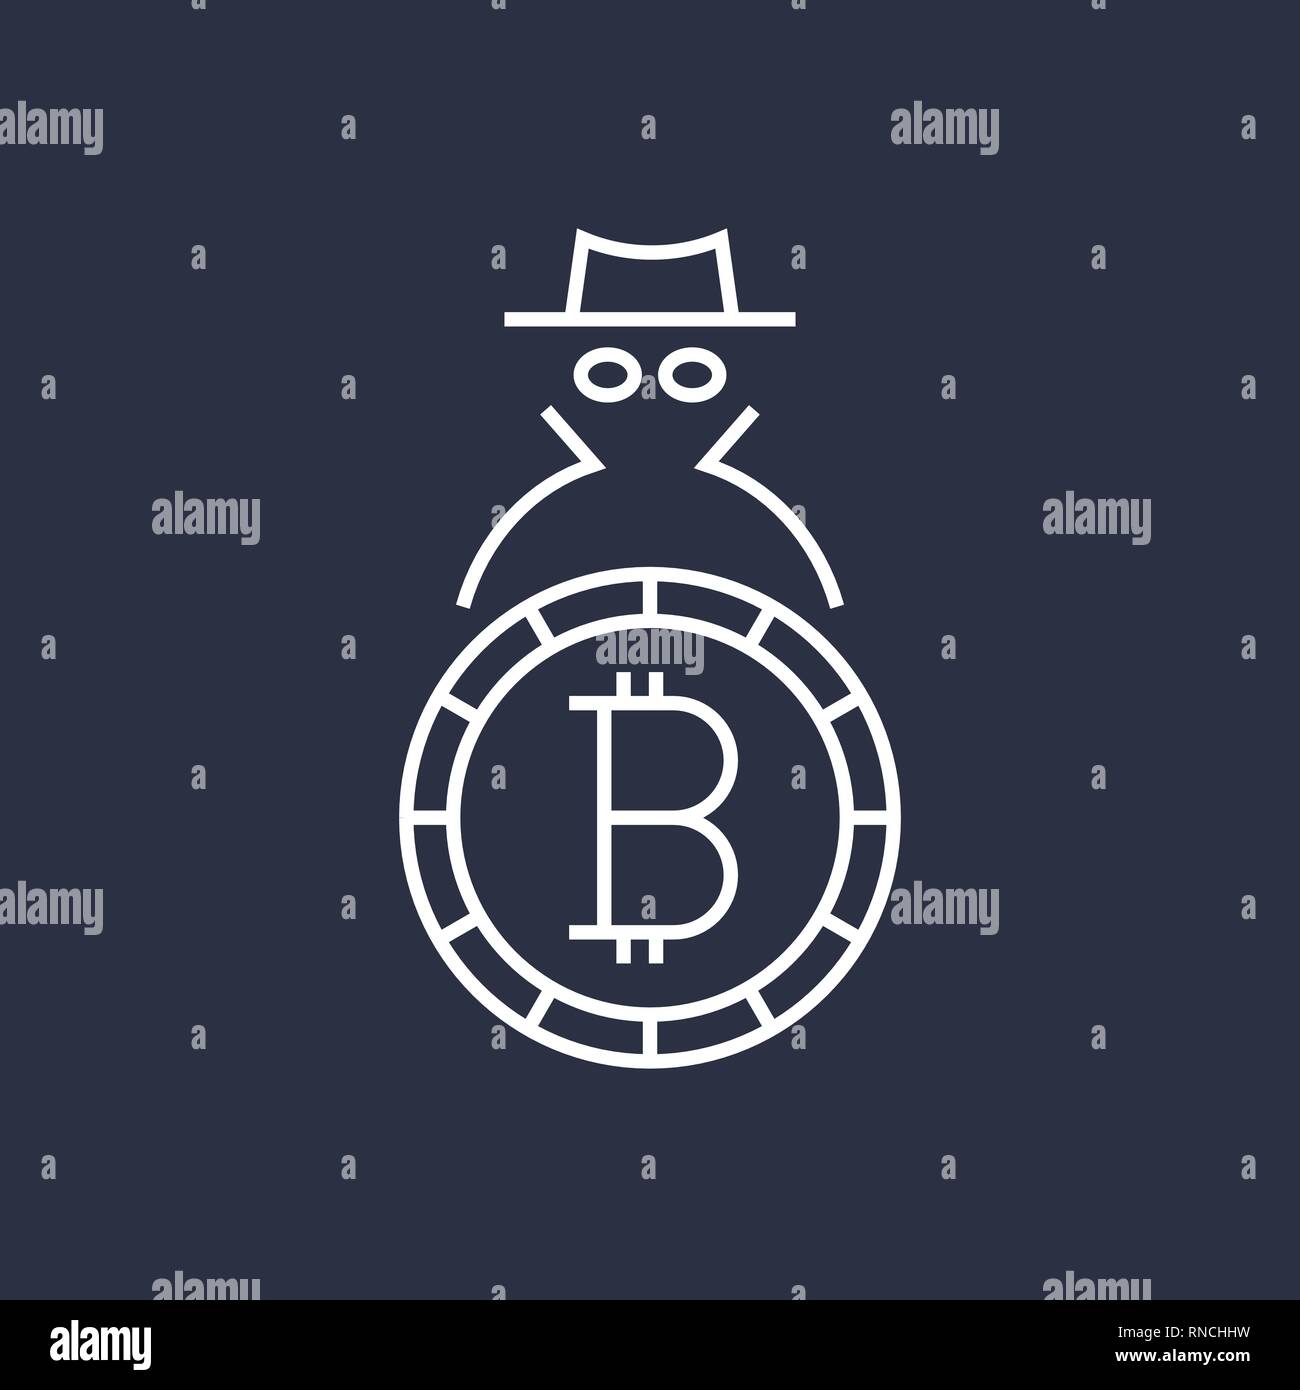 Bitcoin cryptocurrency blockchain Flachbild-Logo. Verwenden Sie für Logos, Drucksachen, Seite und web Einrichtung oder andere Design. Editierbare Schlaganfall. Stock Vektor